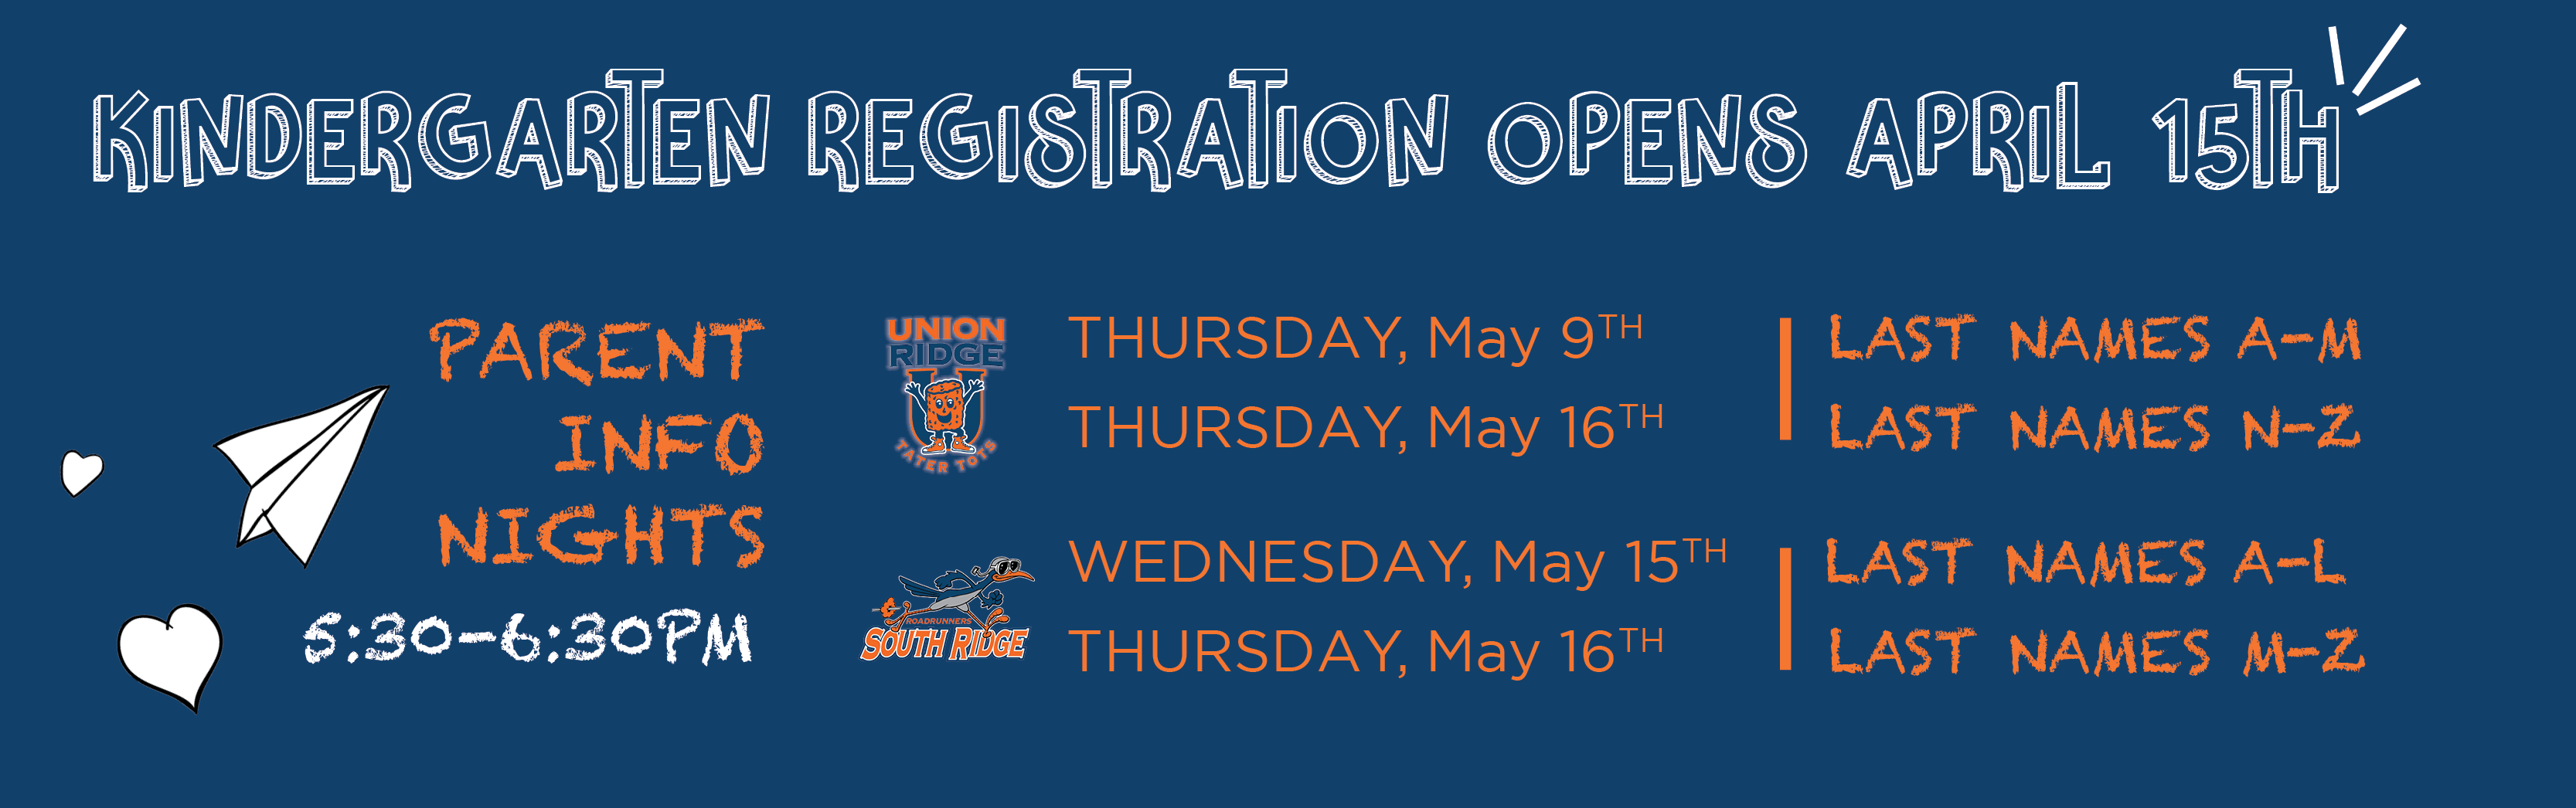 Kinder Registration Opens April 15th